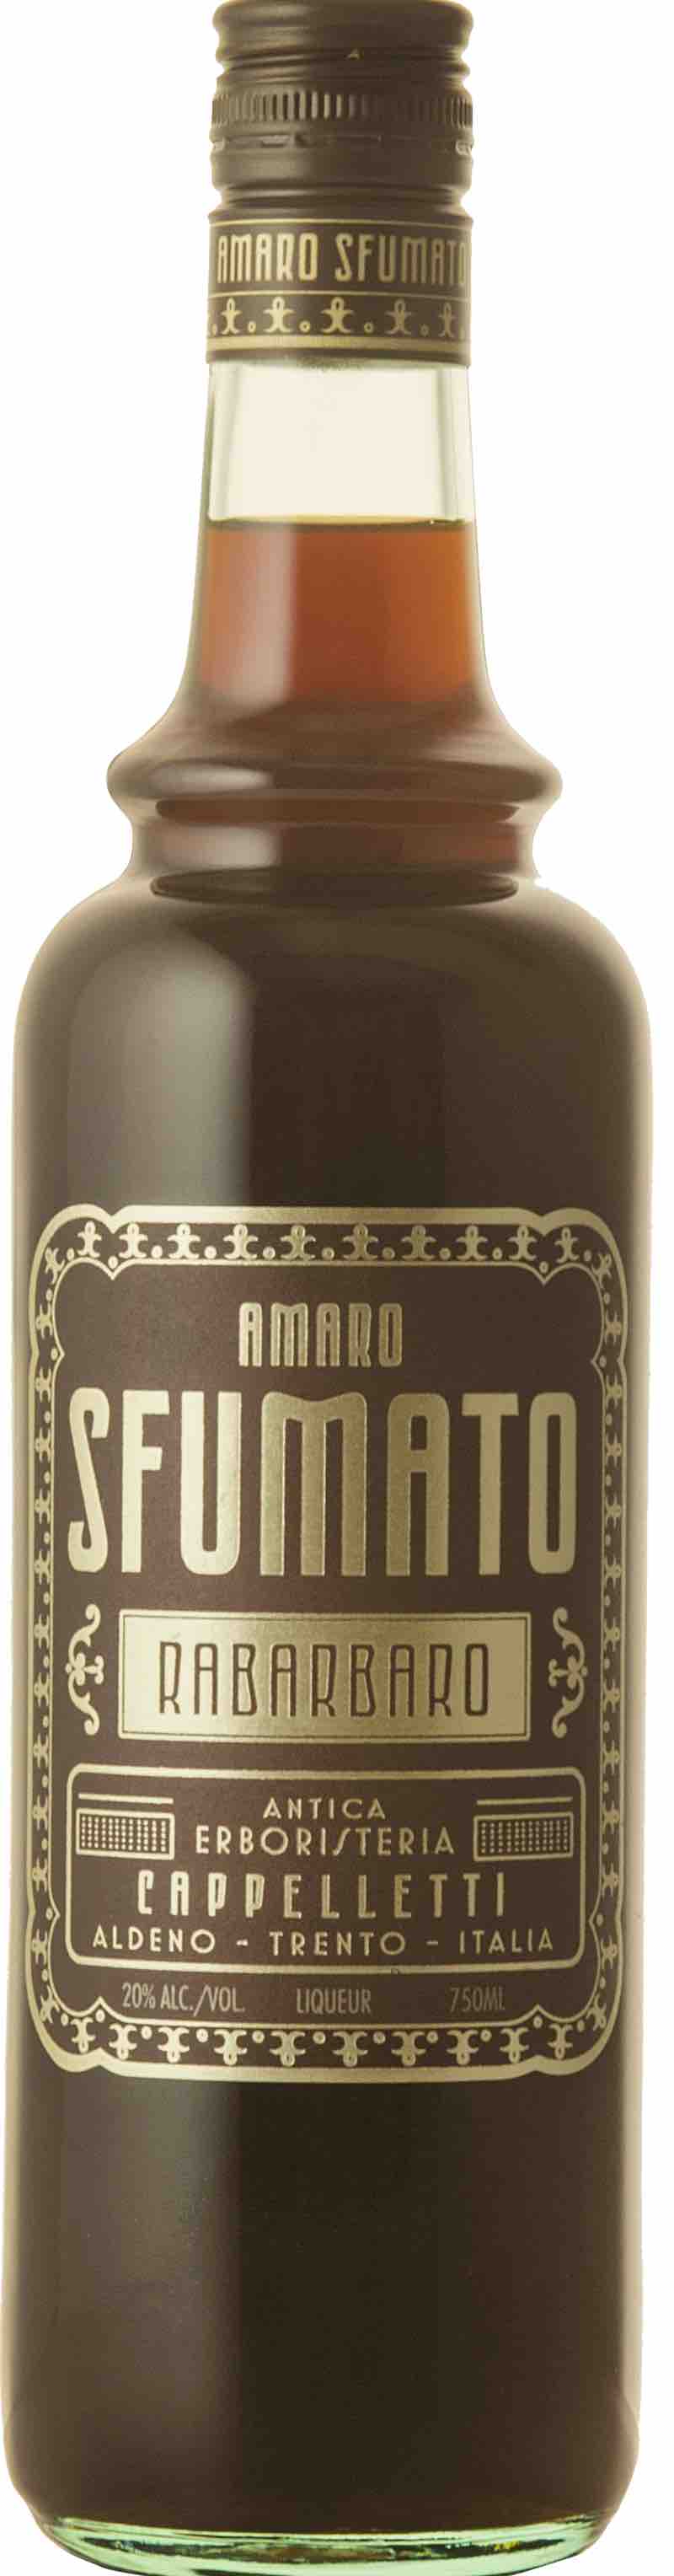 Cappelletti - Amaro Sfumato Rabarbaro (750)